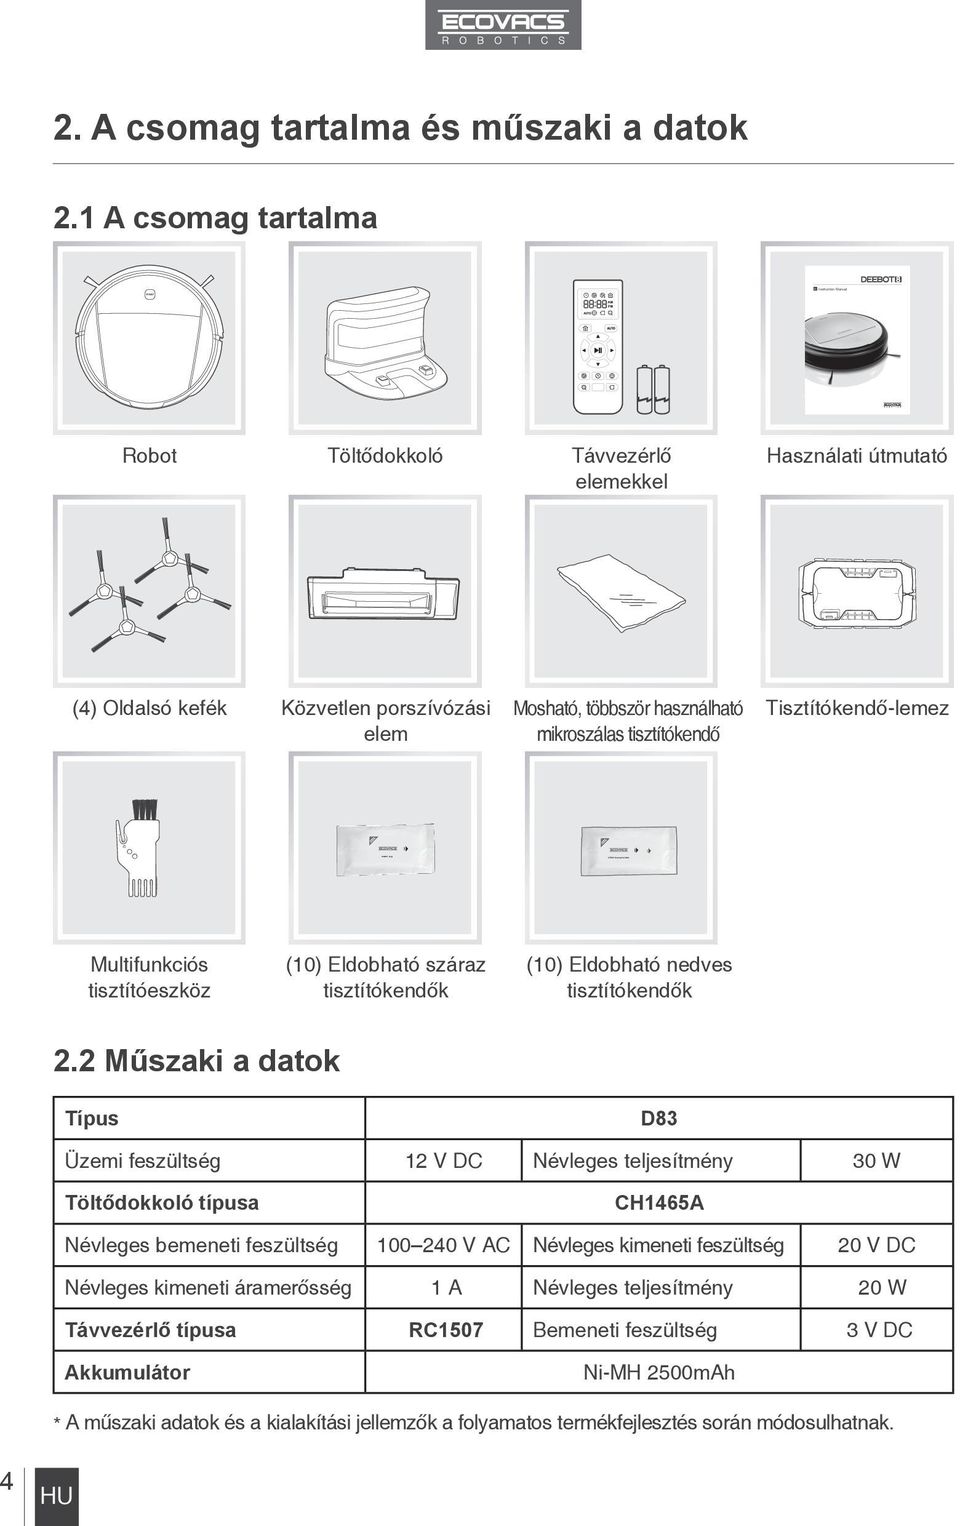 Tisztítókendő-lemez Multifunkciós tisztítóeszköz (10) Eldobható száraz tisztítókendők (10) Eldobható nedves tisztítókendők 2.